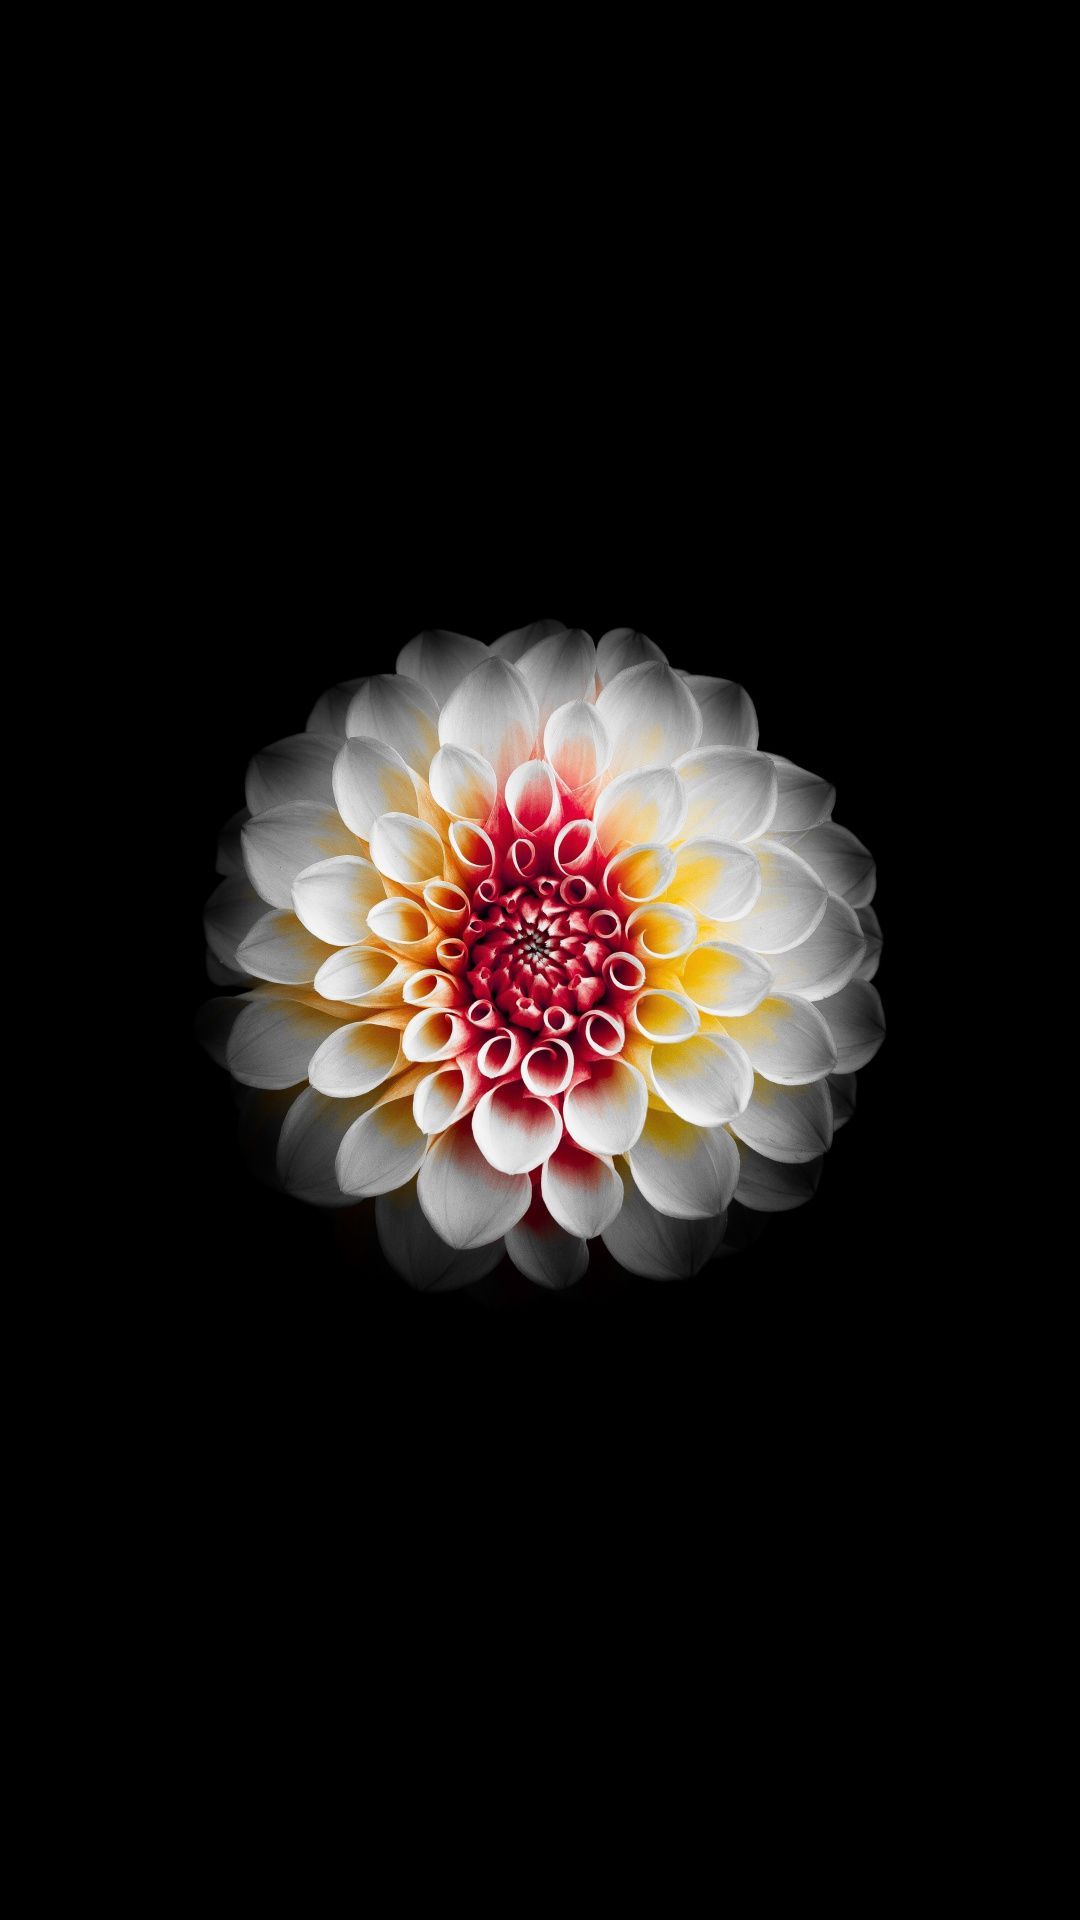 Dahila, flower, white and dark, 1080x1920 wallpaper. Flower iphone wallpaper, Flower phone wallpaper, iPhone homescreen wallpaper